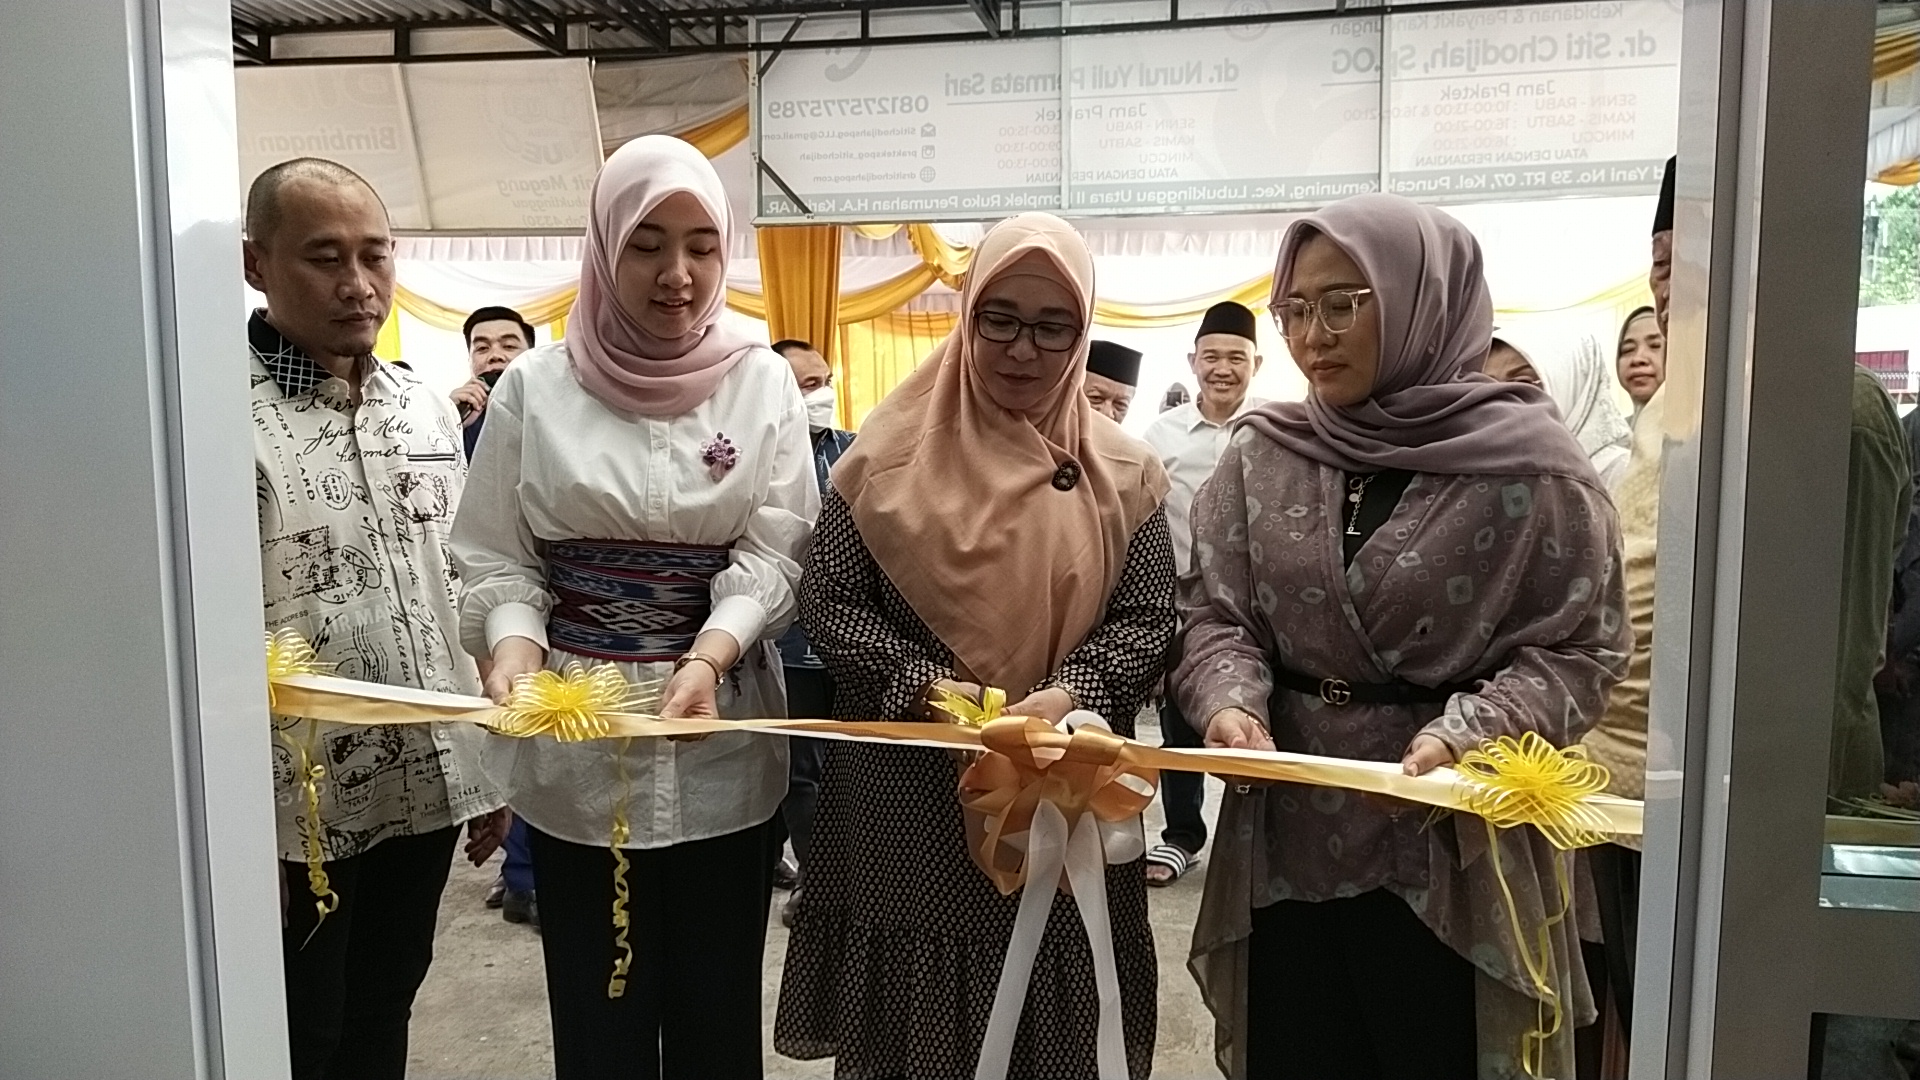 Grand Opening Sukses di Gelar, dr. Siti Chodijah Sp.OG Siap Utamakan Layanan Prima Bagi Pasien